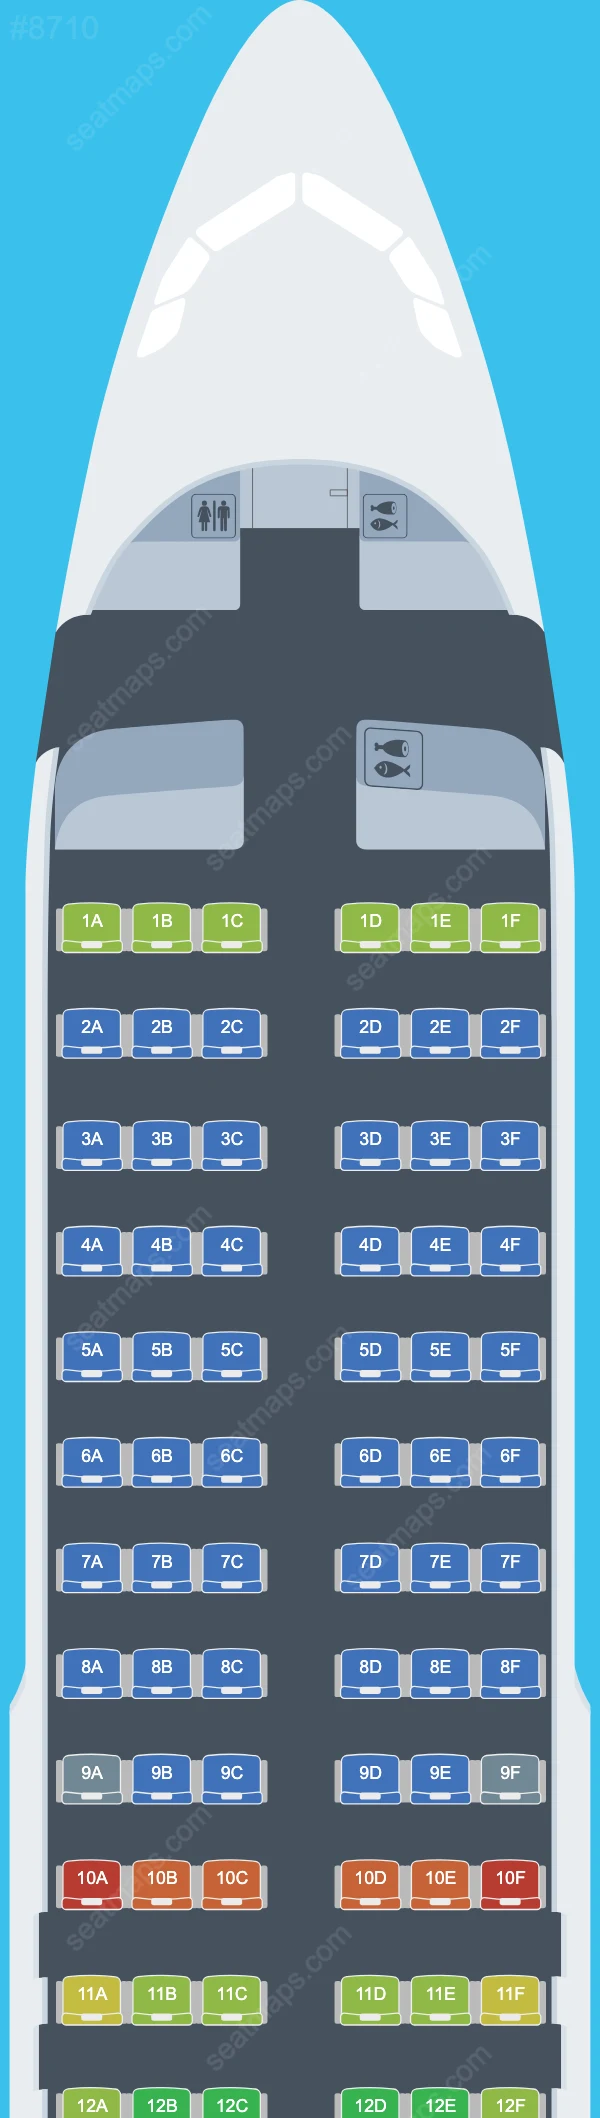 SAS Airbus A320 Seat Maps A320-200neo